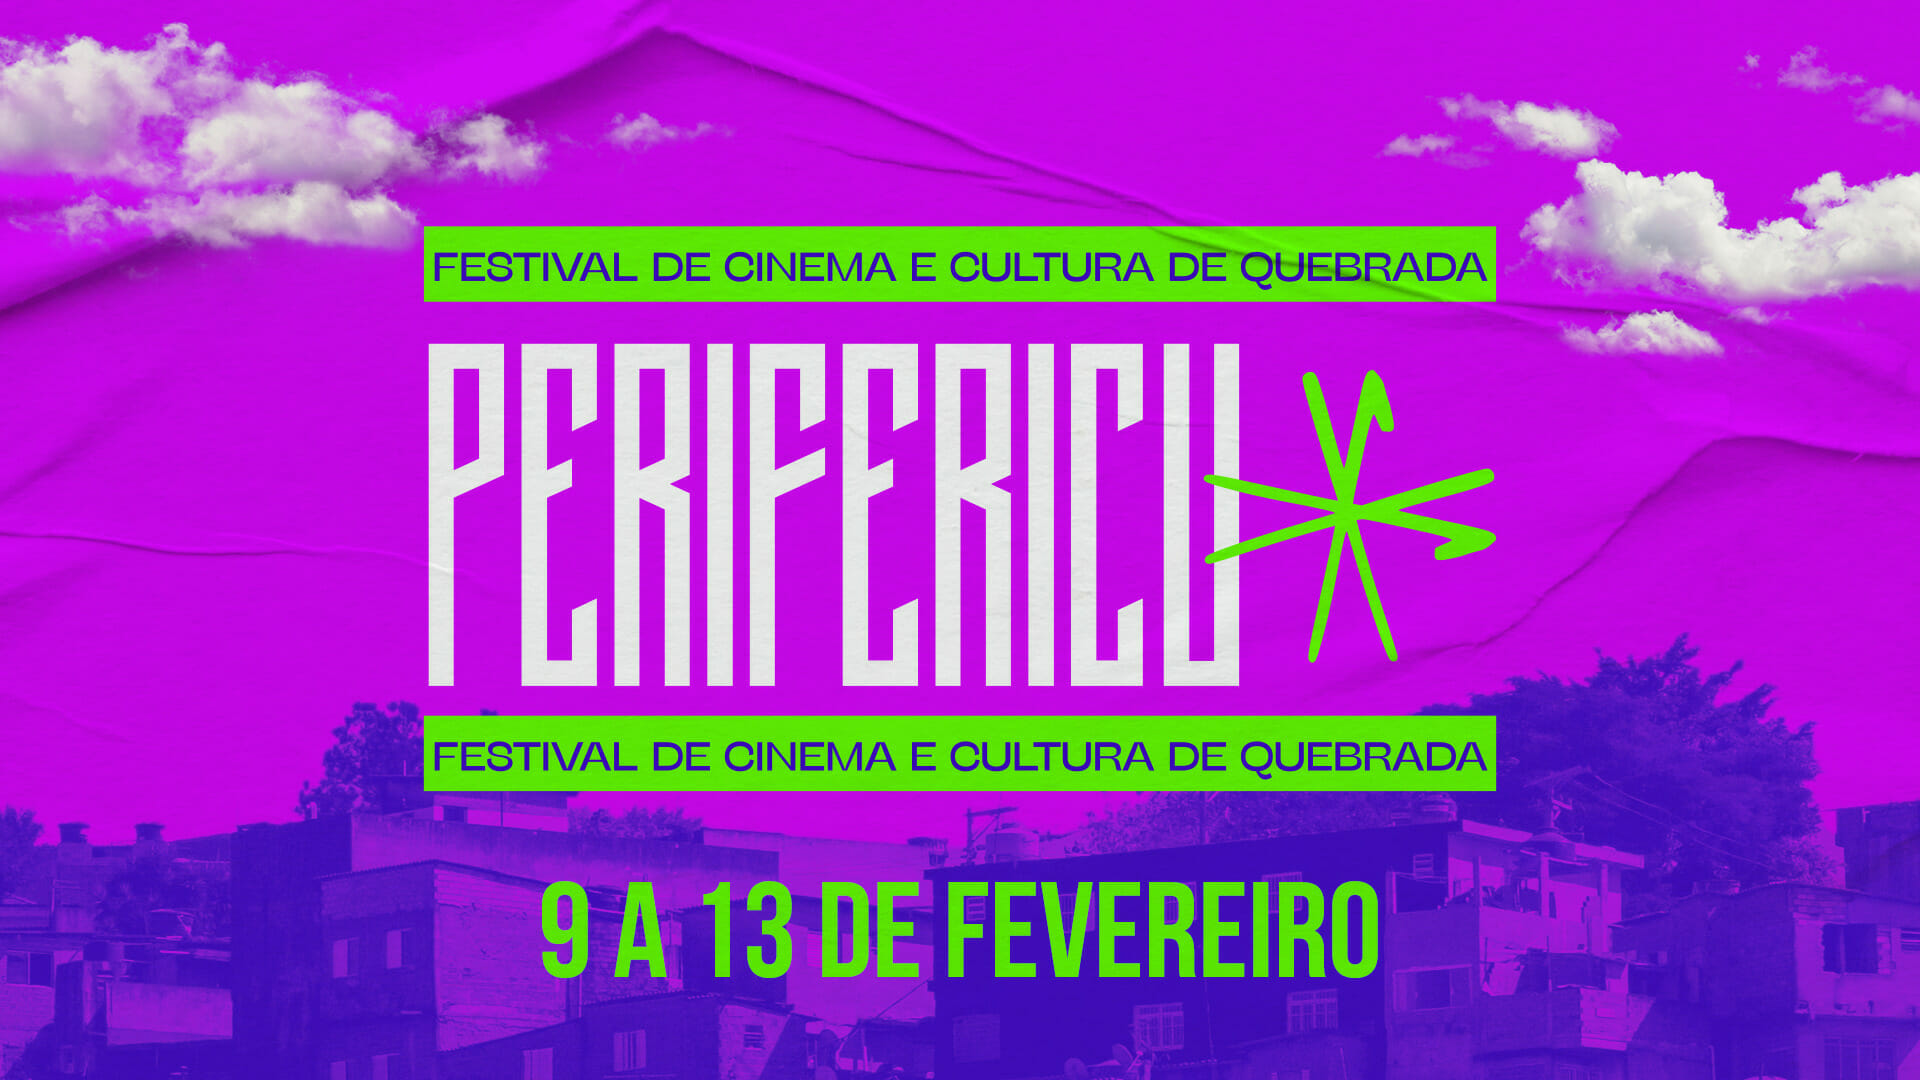 Festival Perifericu: evento visa celebrar processos artísticos LGBTQIA+ realizados nas periferias